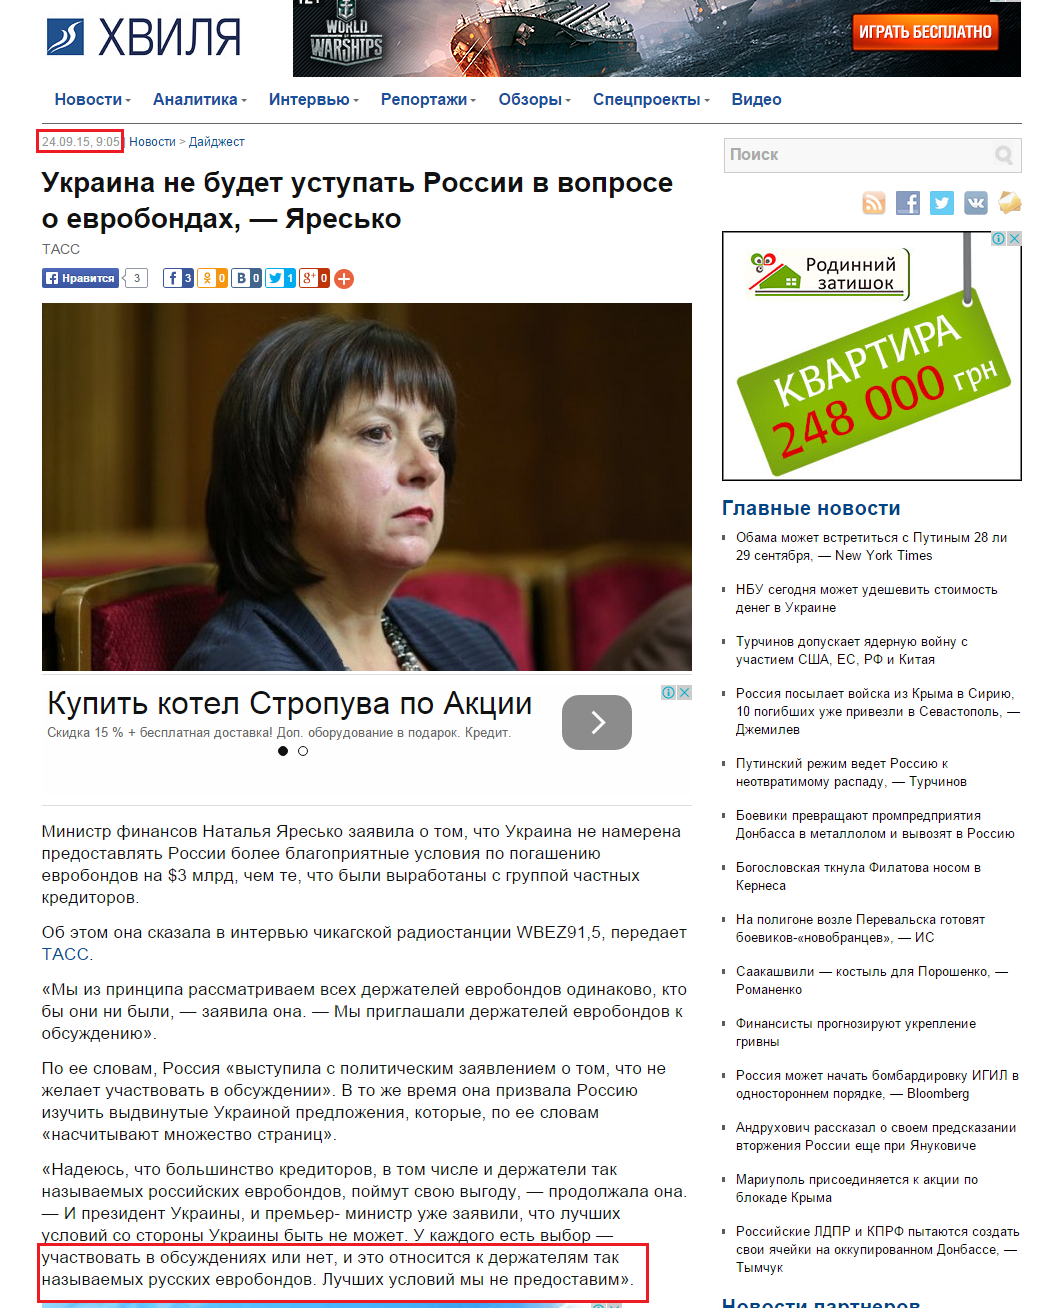 http://hvylya.net/news/digest/ukraina-ne-budet-ustupat-rossii-v-voprose-o-evrobondah-yaresko.html